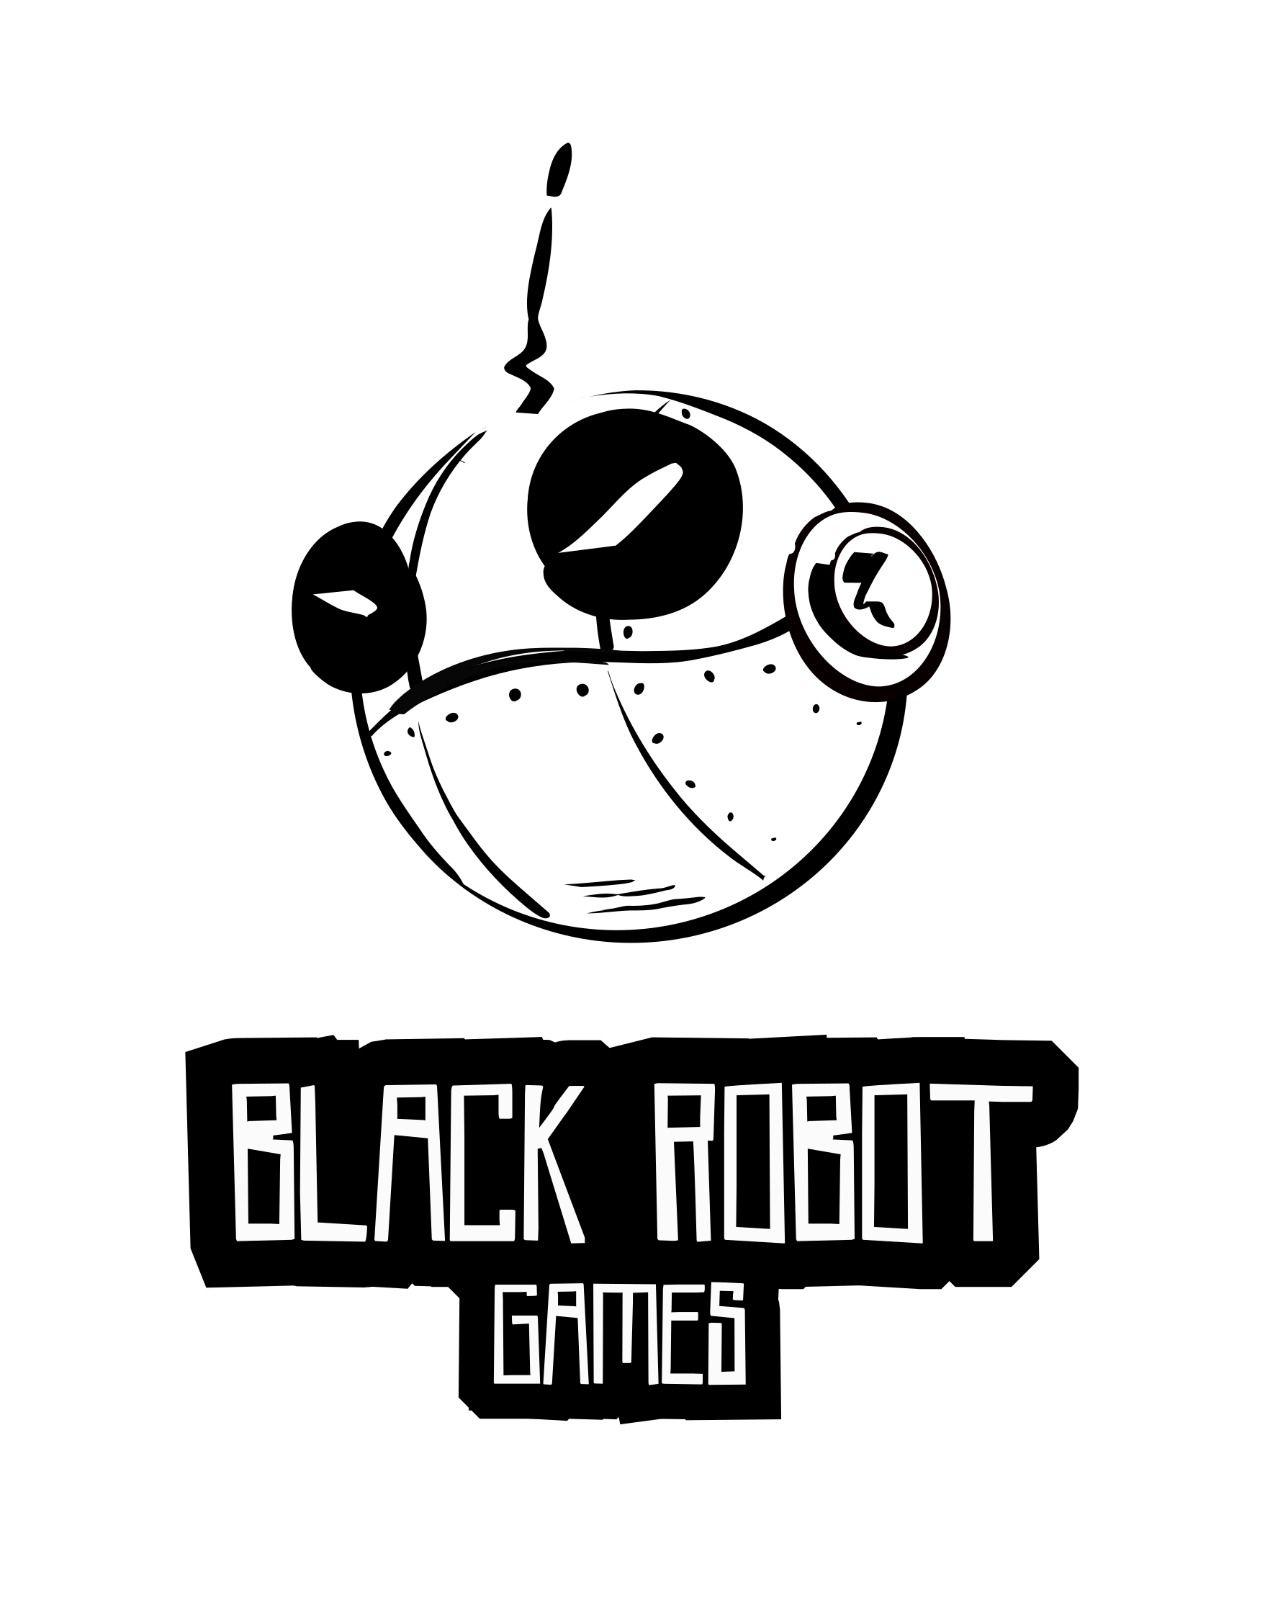 White Robot Logo - Black Robot Games logo thoughts? : logodesign